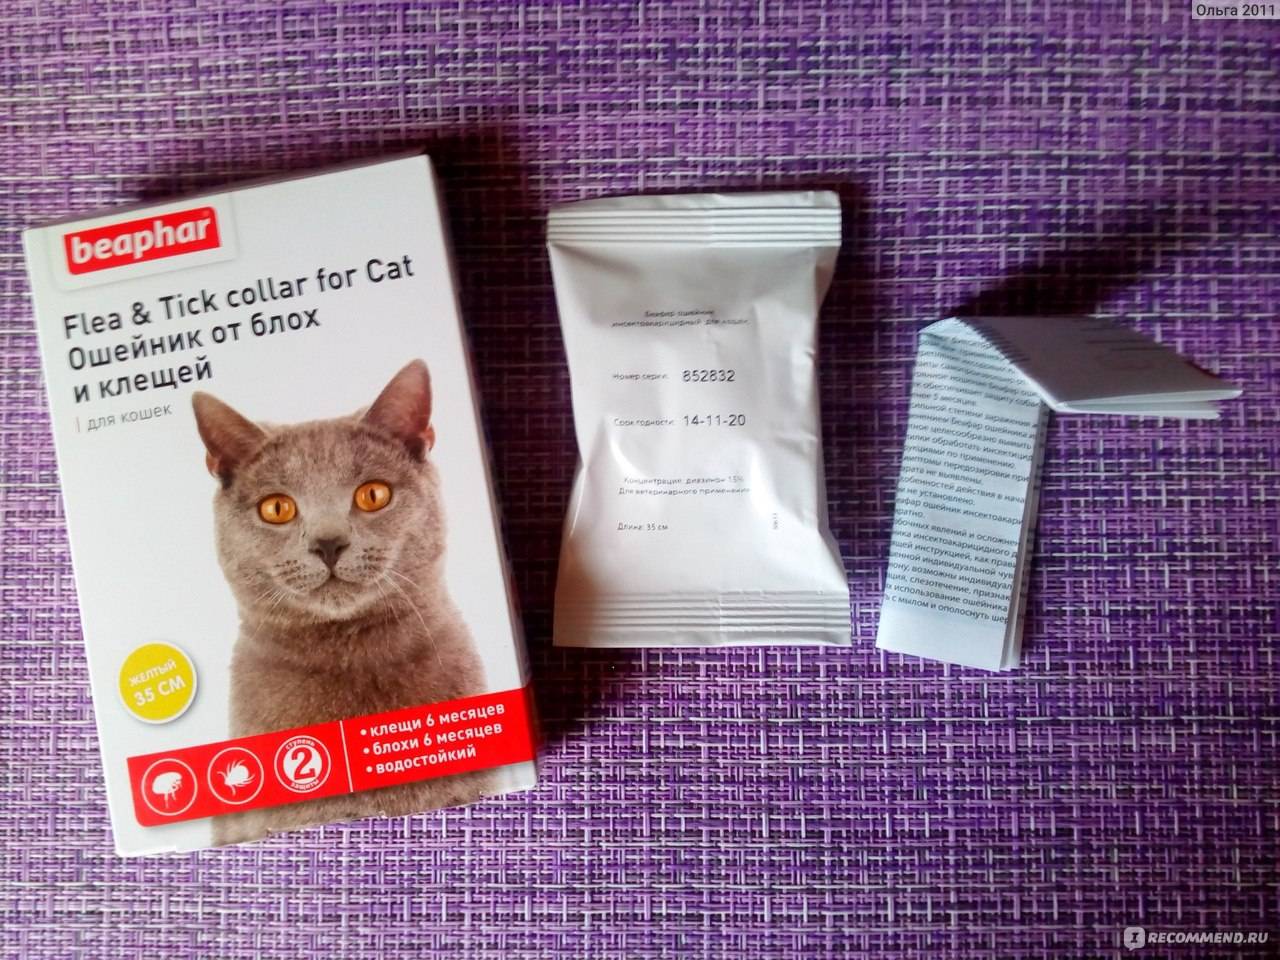 Спрей от блох для кошек: особенности использования, обзор препаратов и отзывы